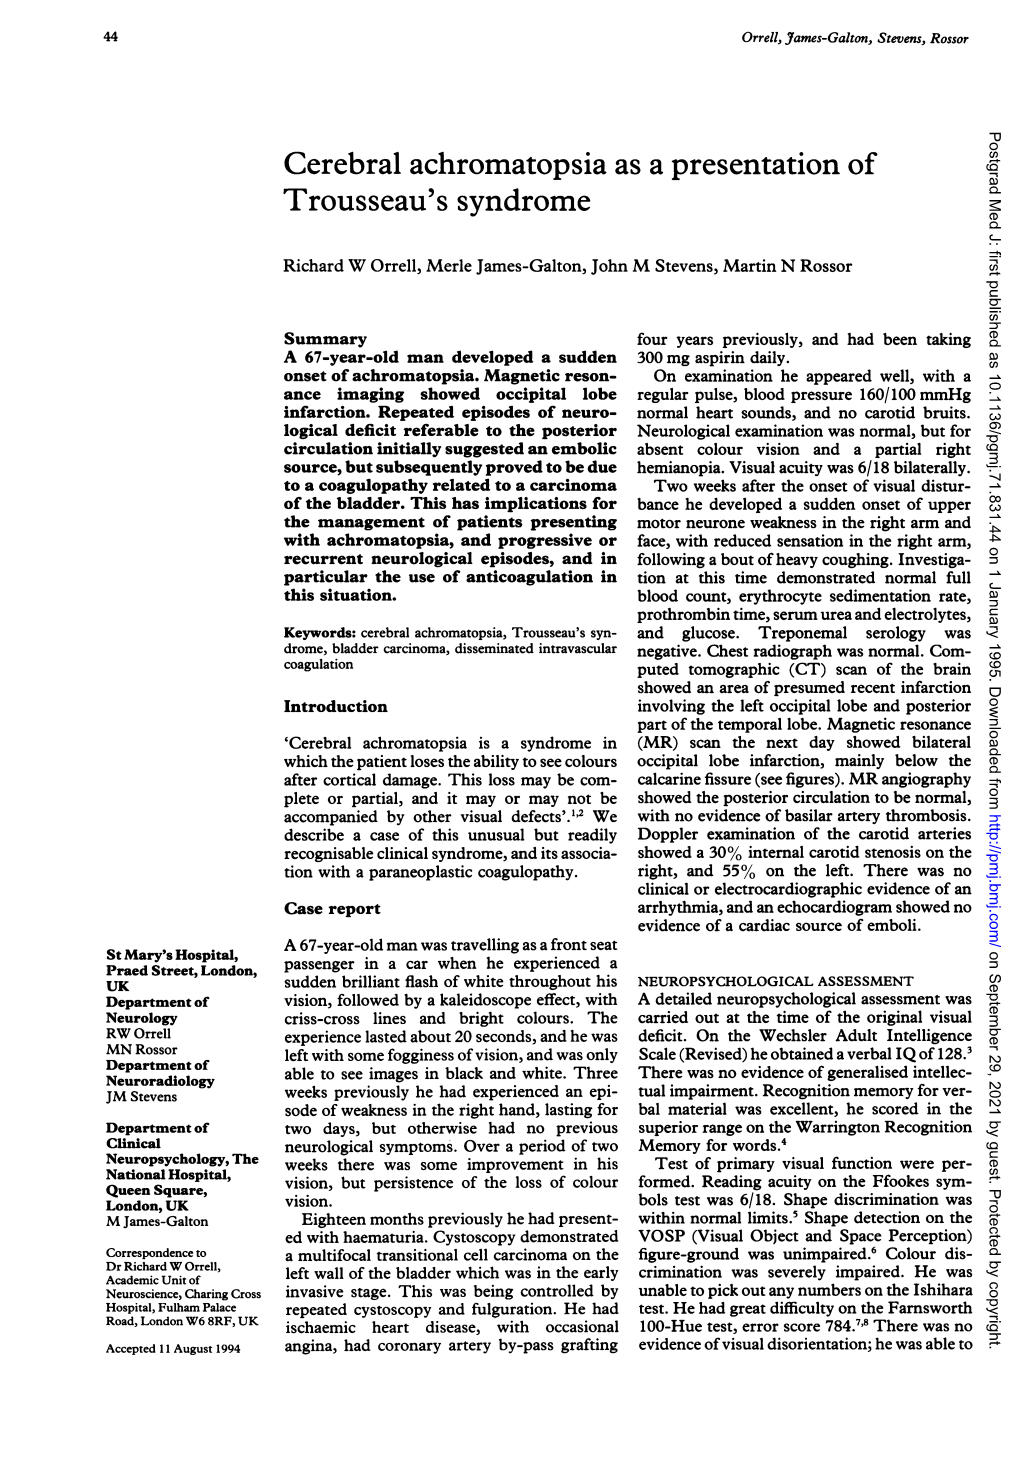 Cerebral Achromatopsia As a Presentation of Trousseau's Syndrome